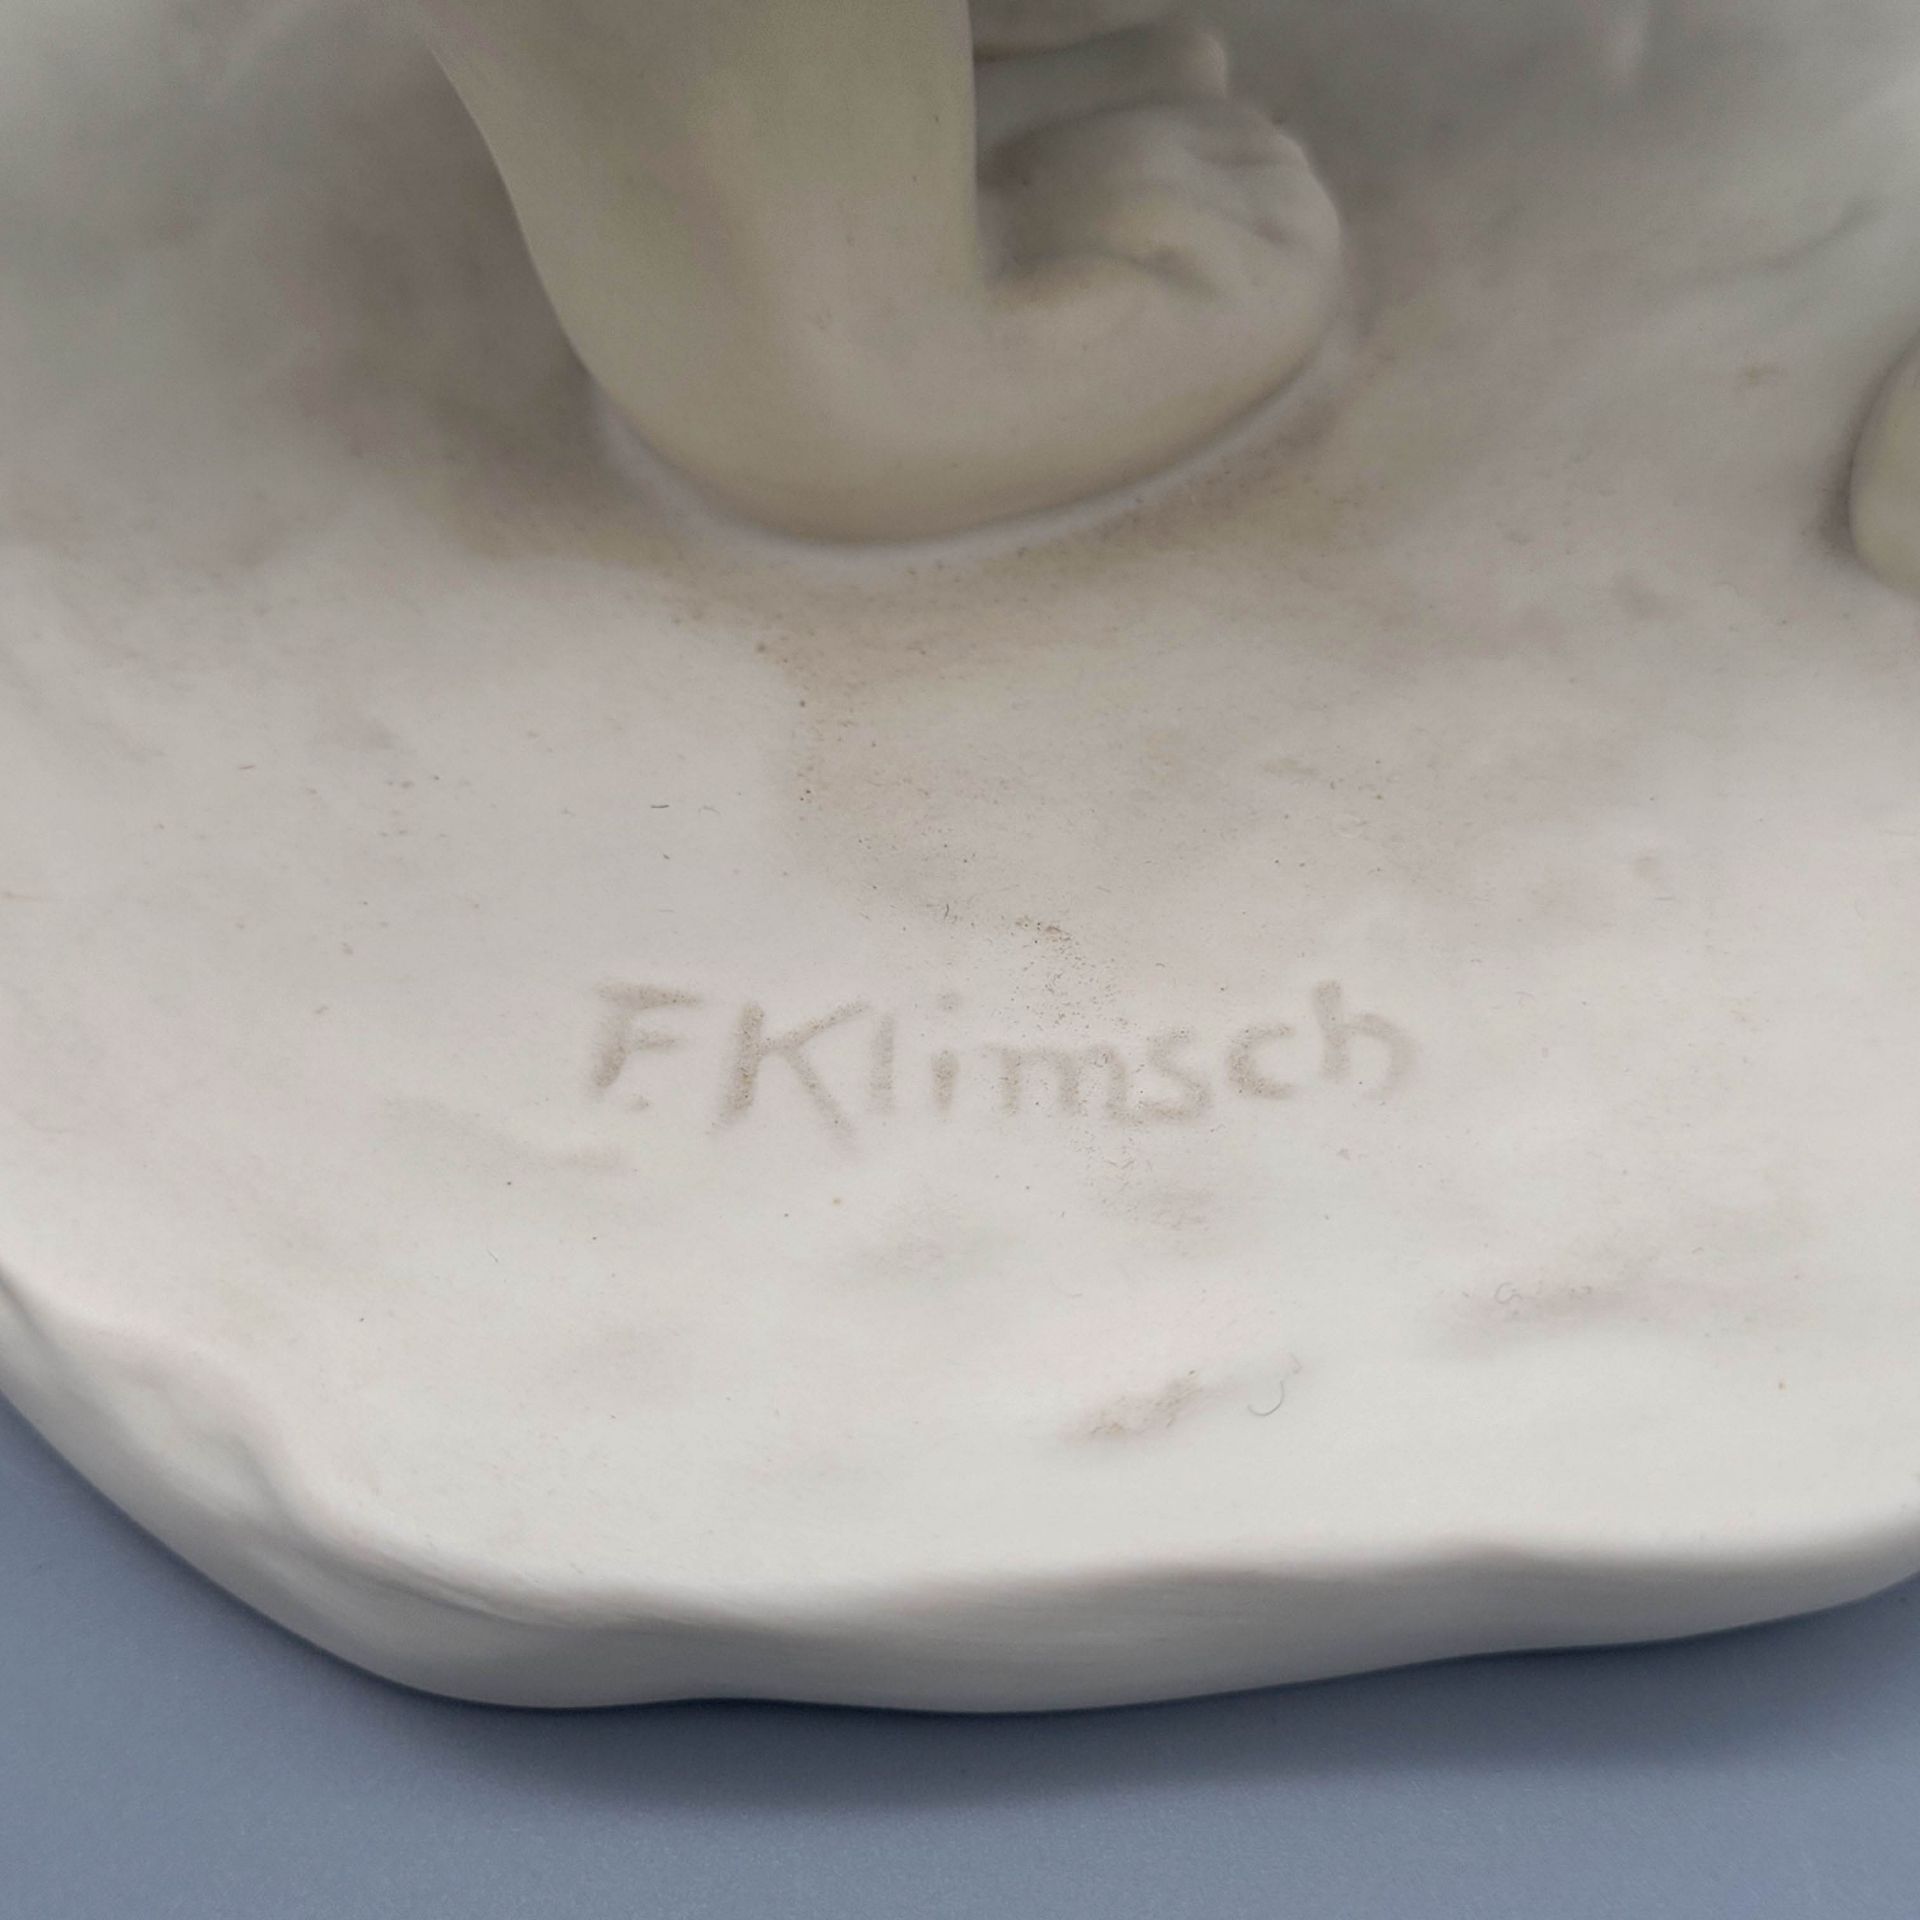 KLIMSCH, Fritz: Hockende - Image 3 of 3